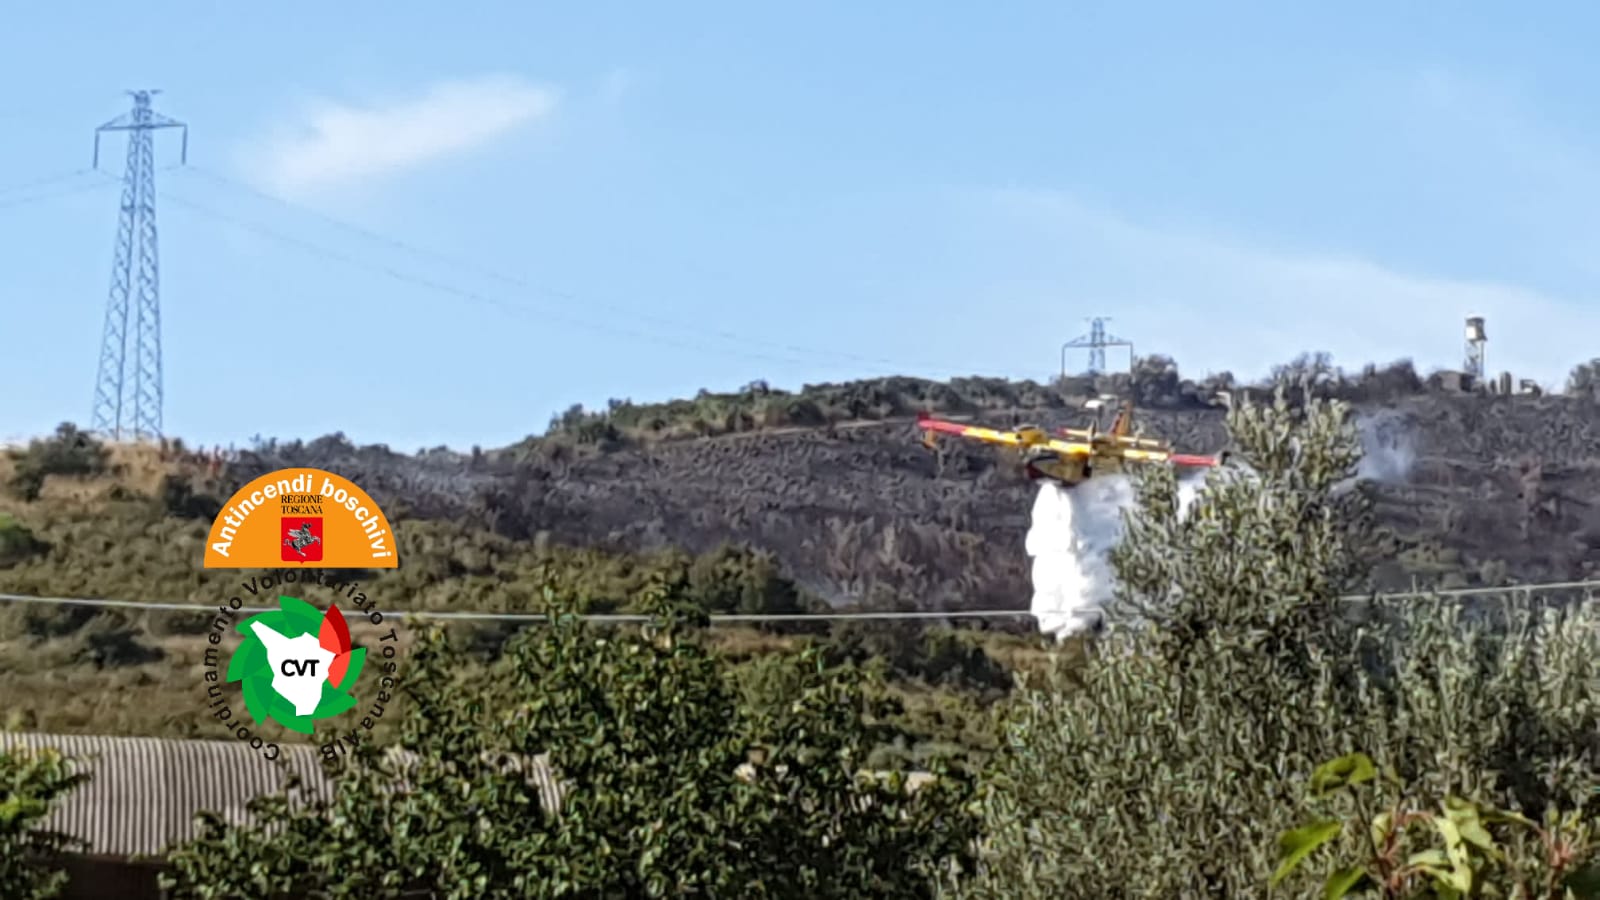 Incendio boschivo a Montemazzano, sul posto tre elicotteri e un canadair